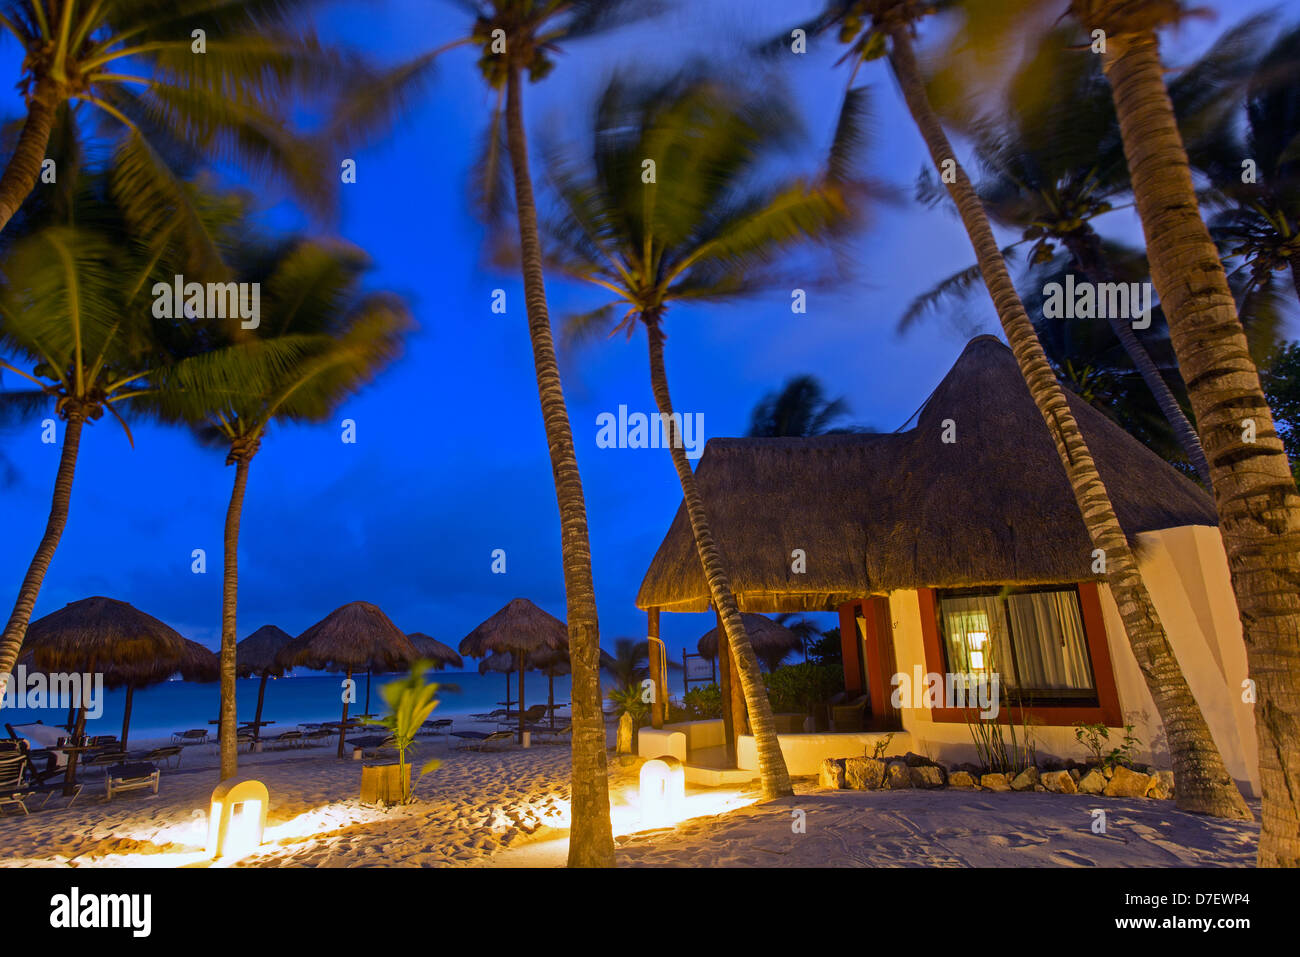 Hébergement de style cabana sur la plage entourée de palmiers à l'aube Banque D'Images